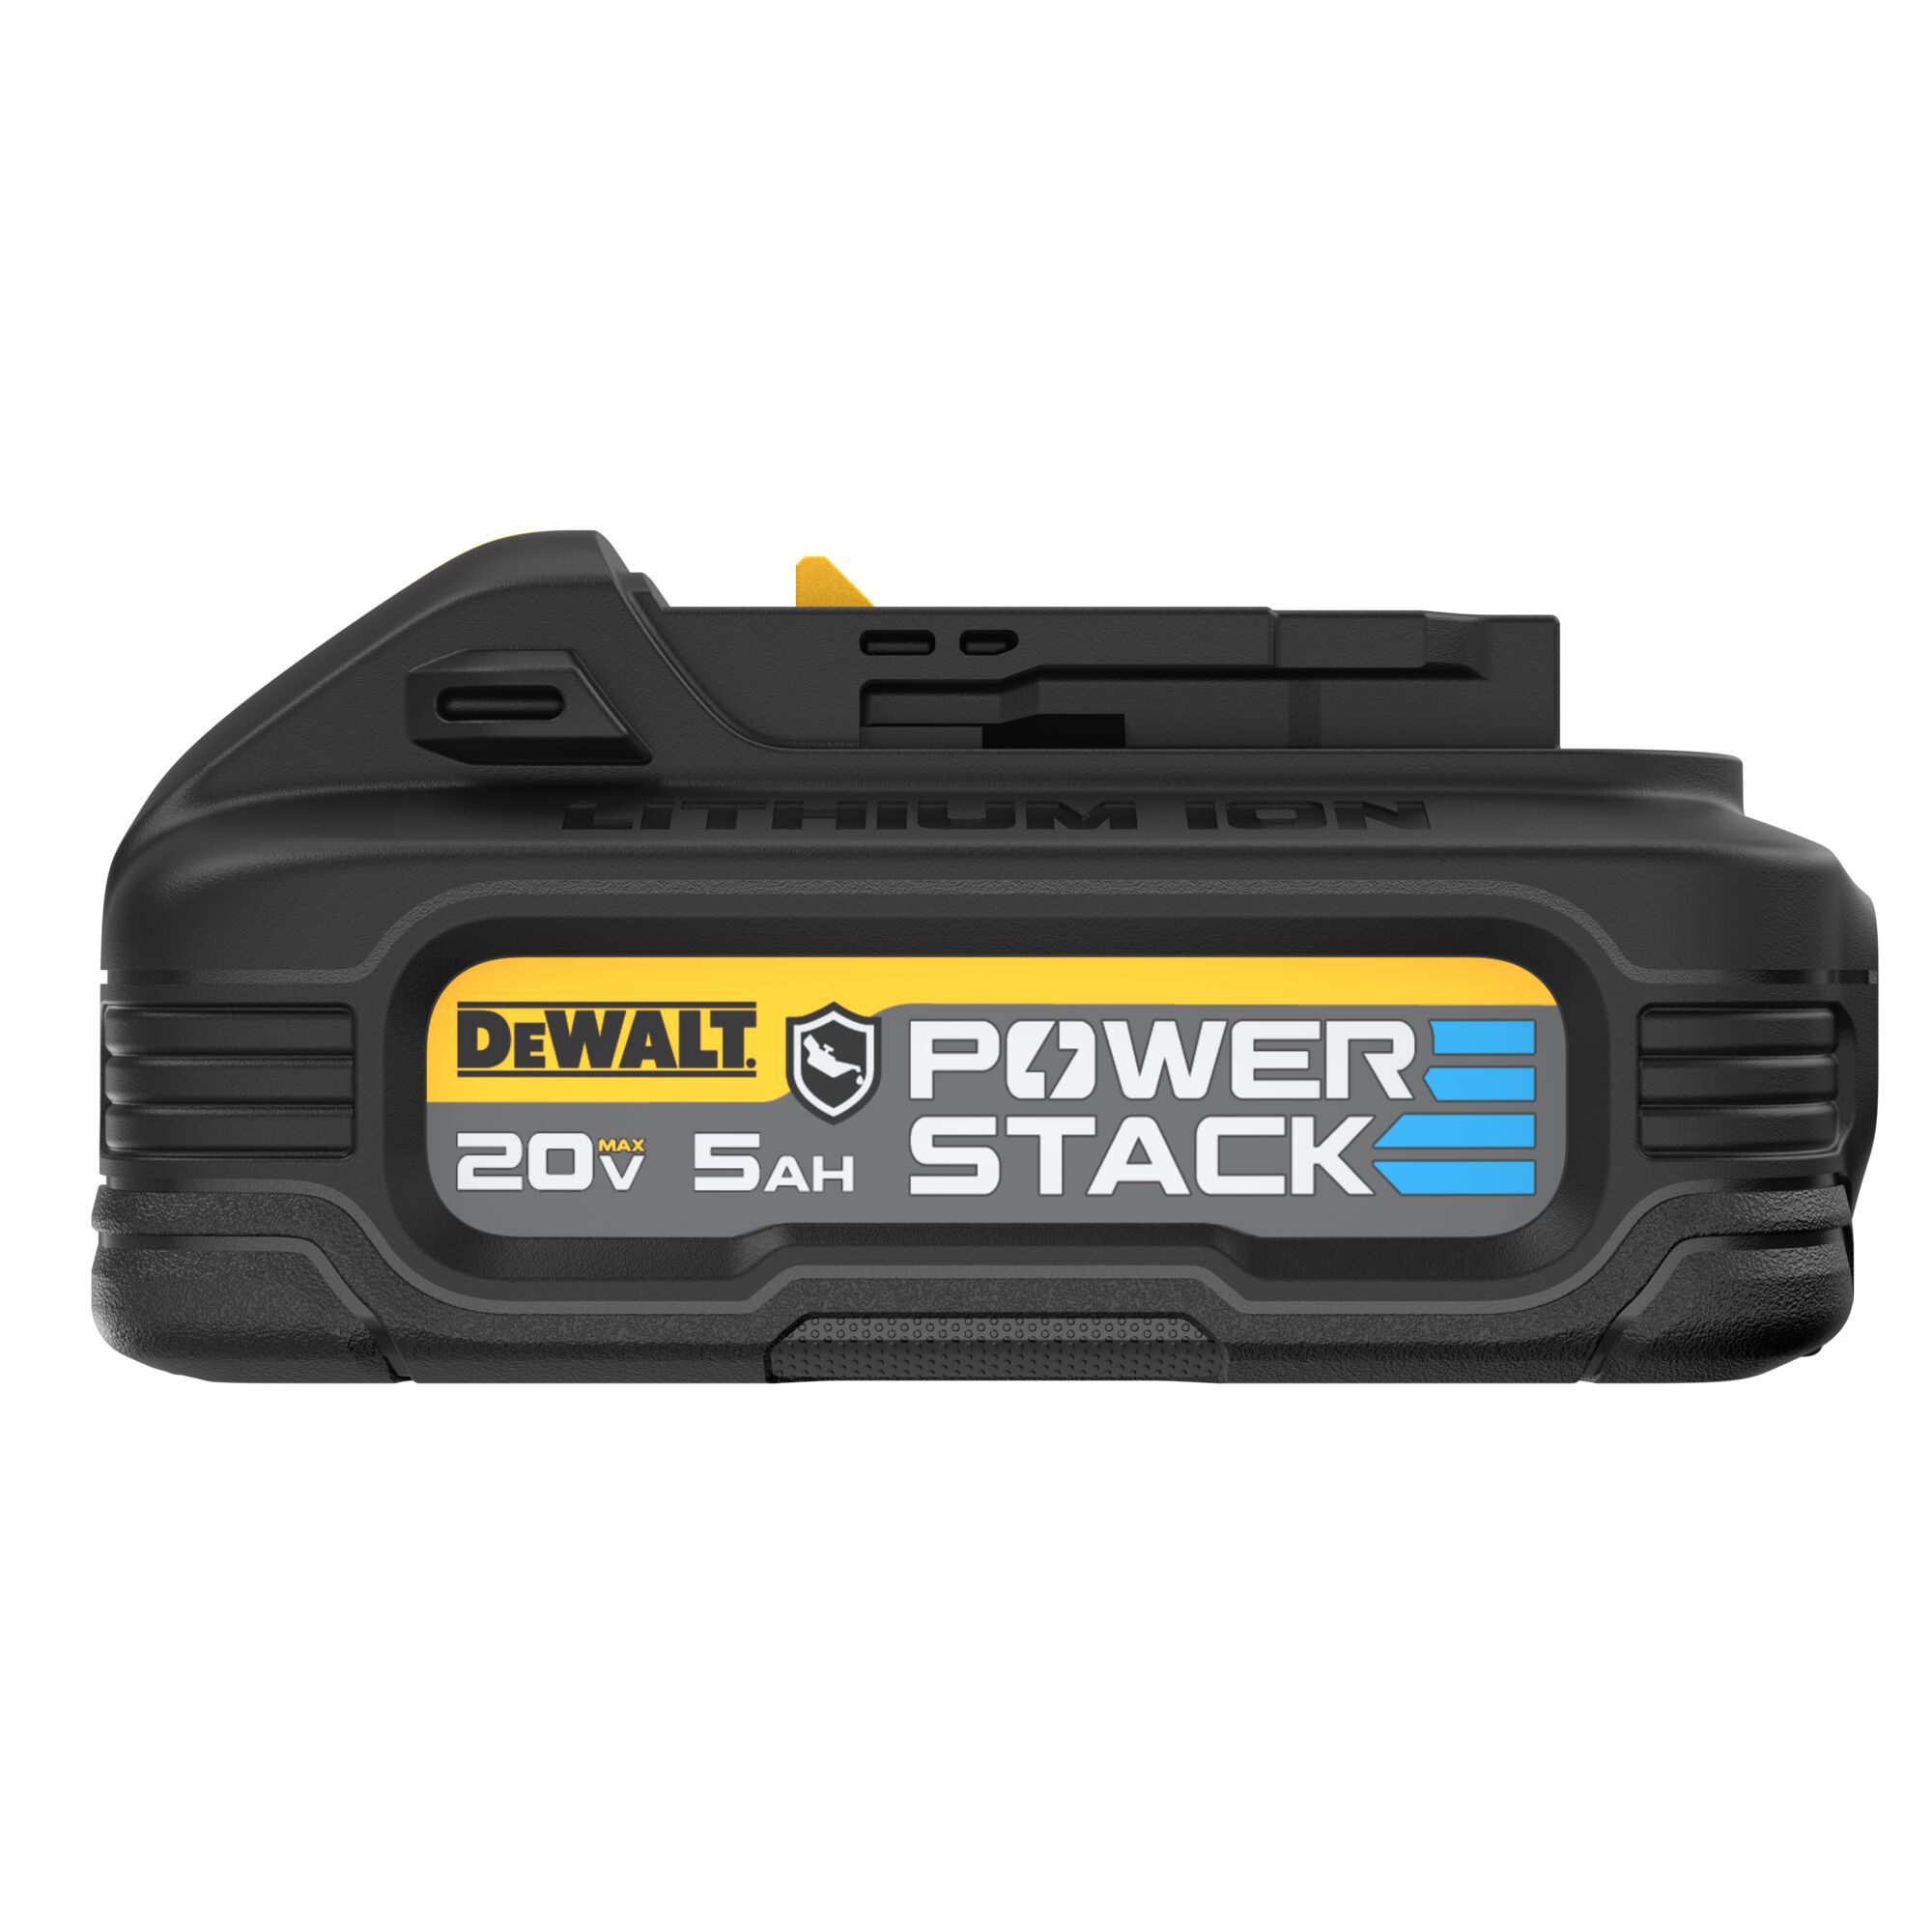 Power Tool Batteries & Chargers | DEWALT